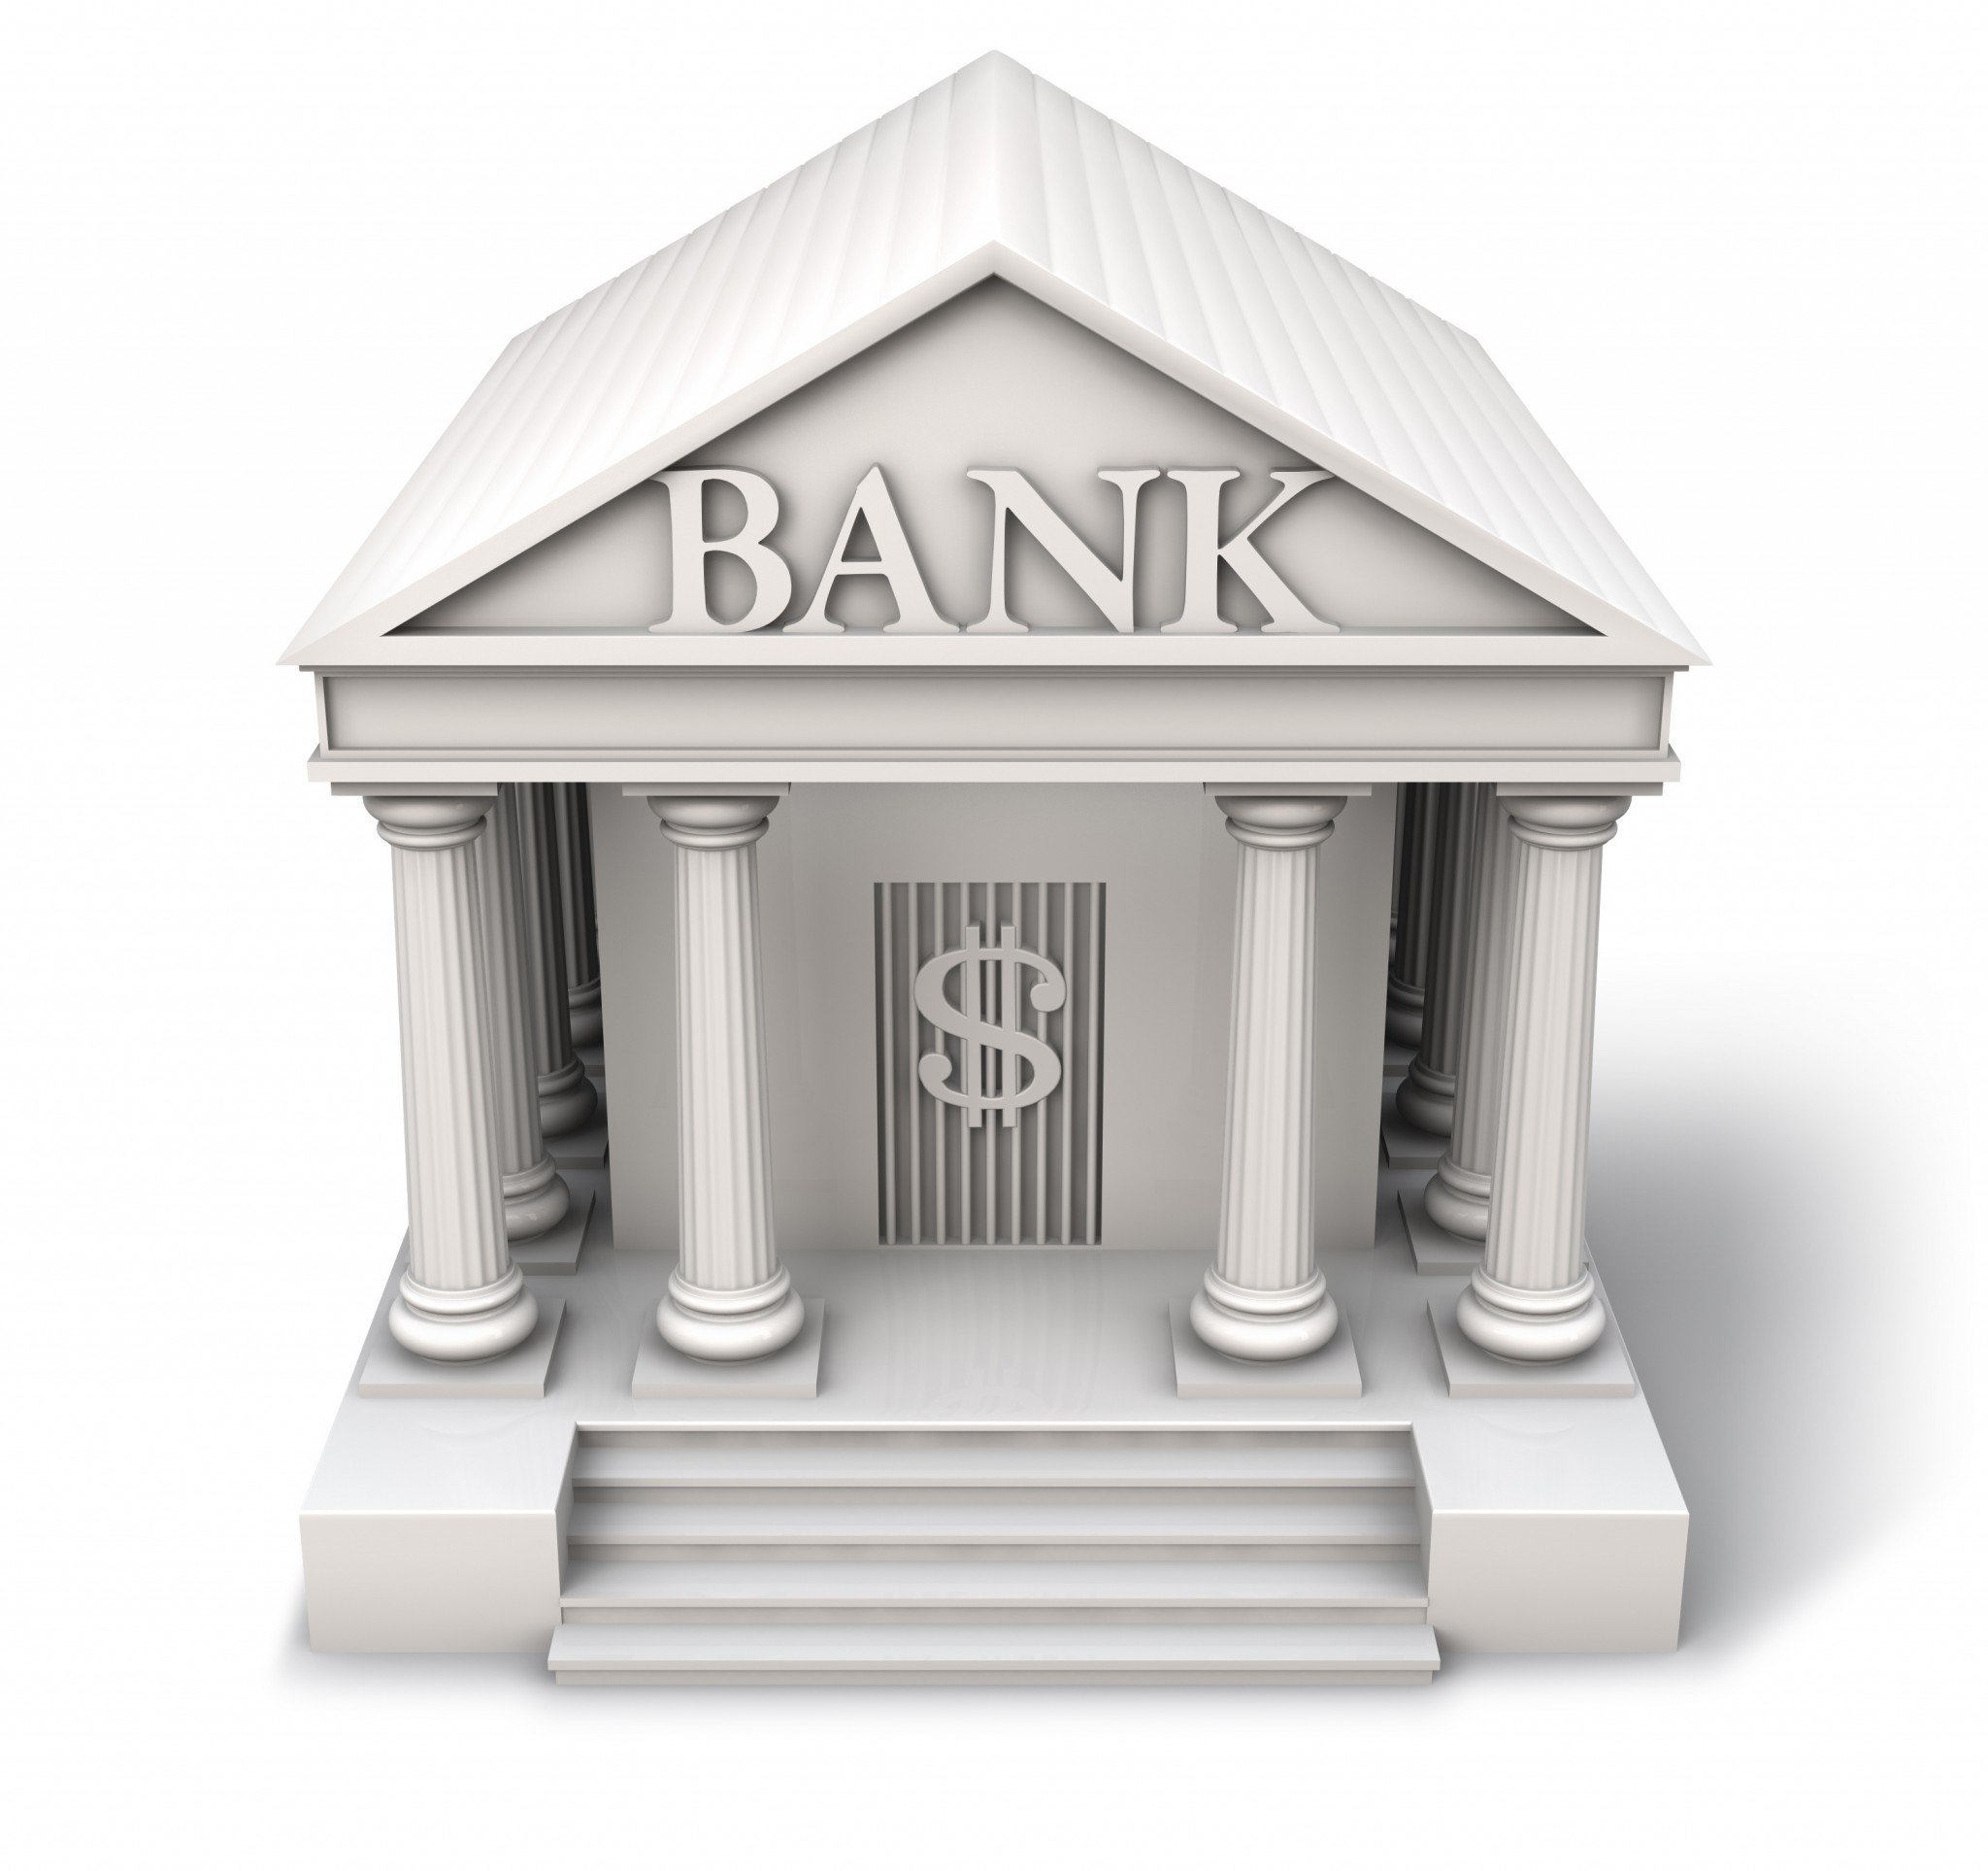 Ups bank. Банк. Здание банка. Банк рисунок. Банк на белом фоне.